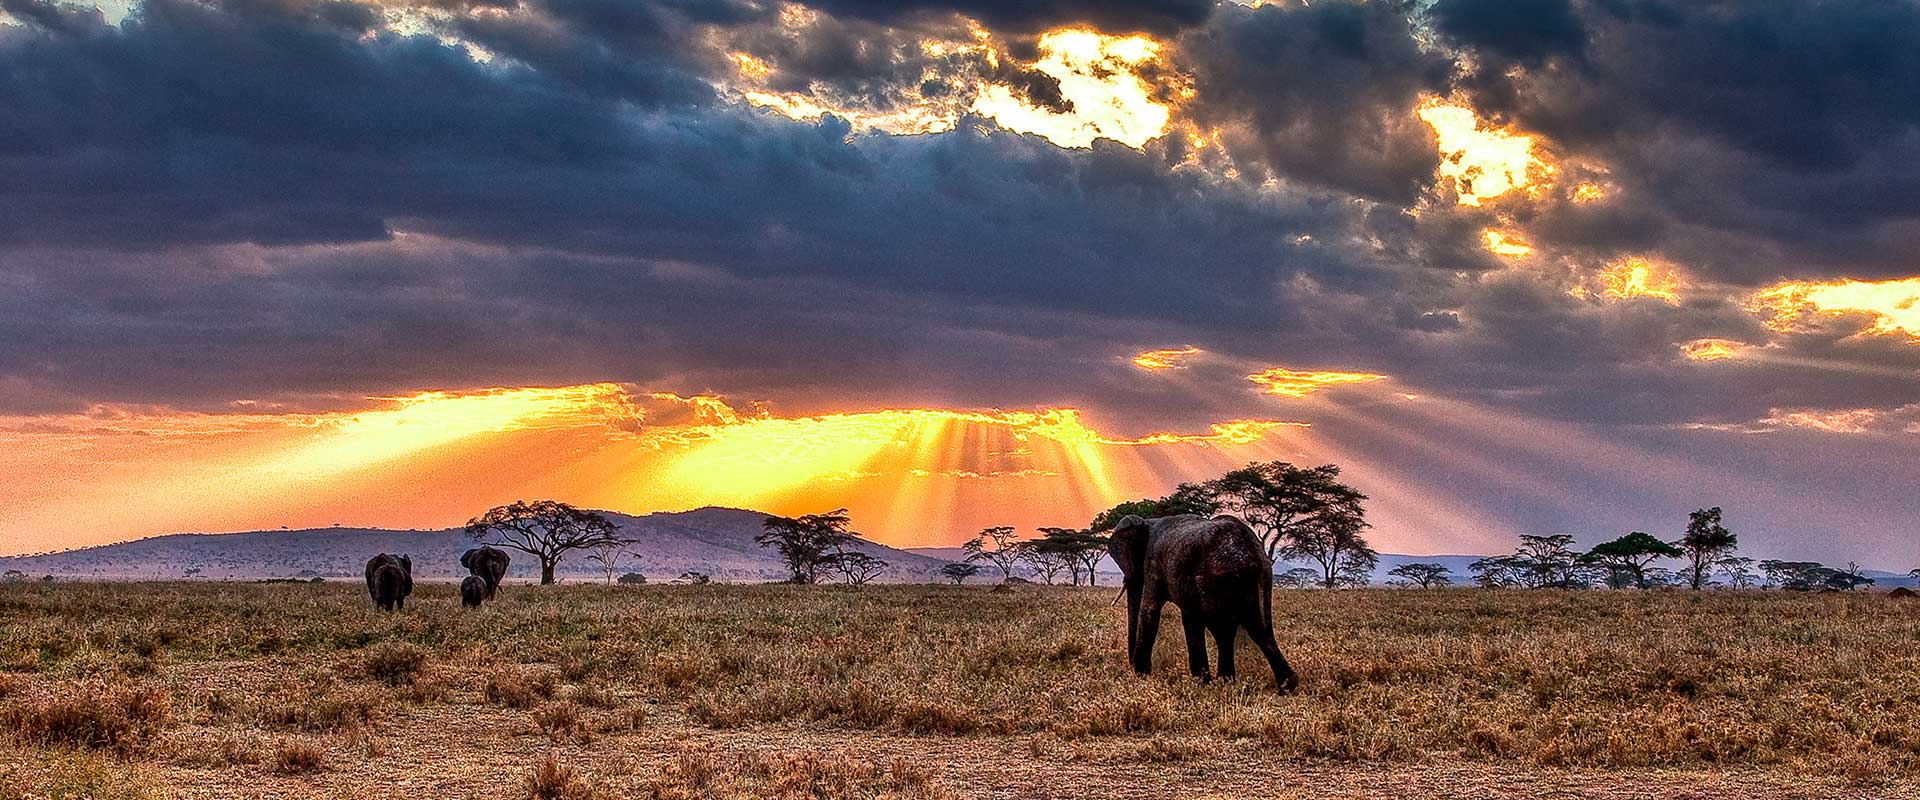 tanzania safari vacations